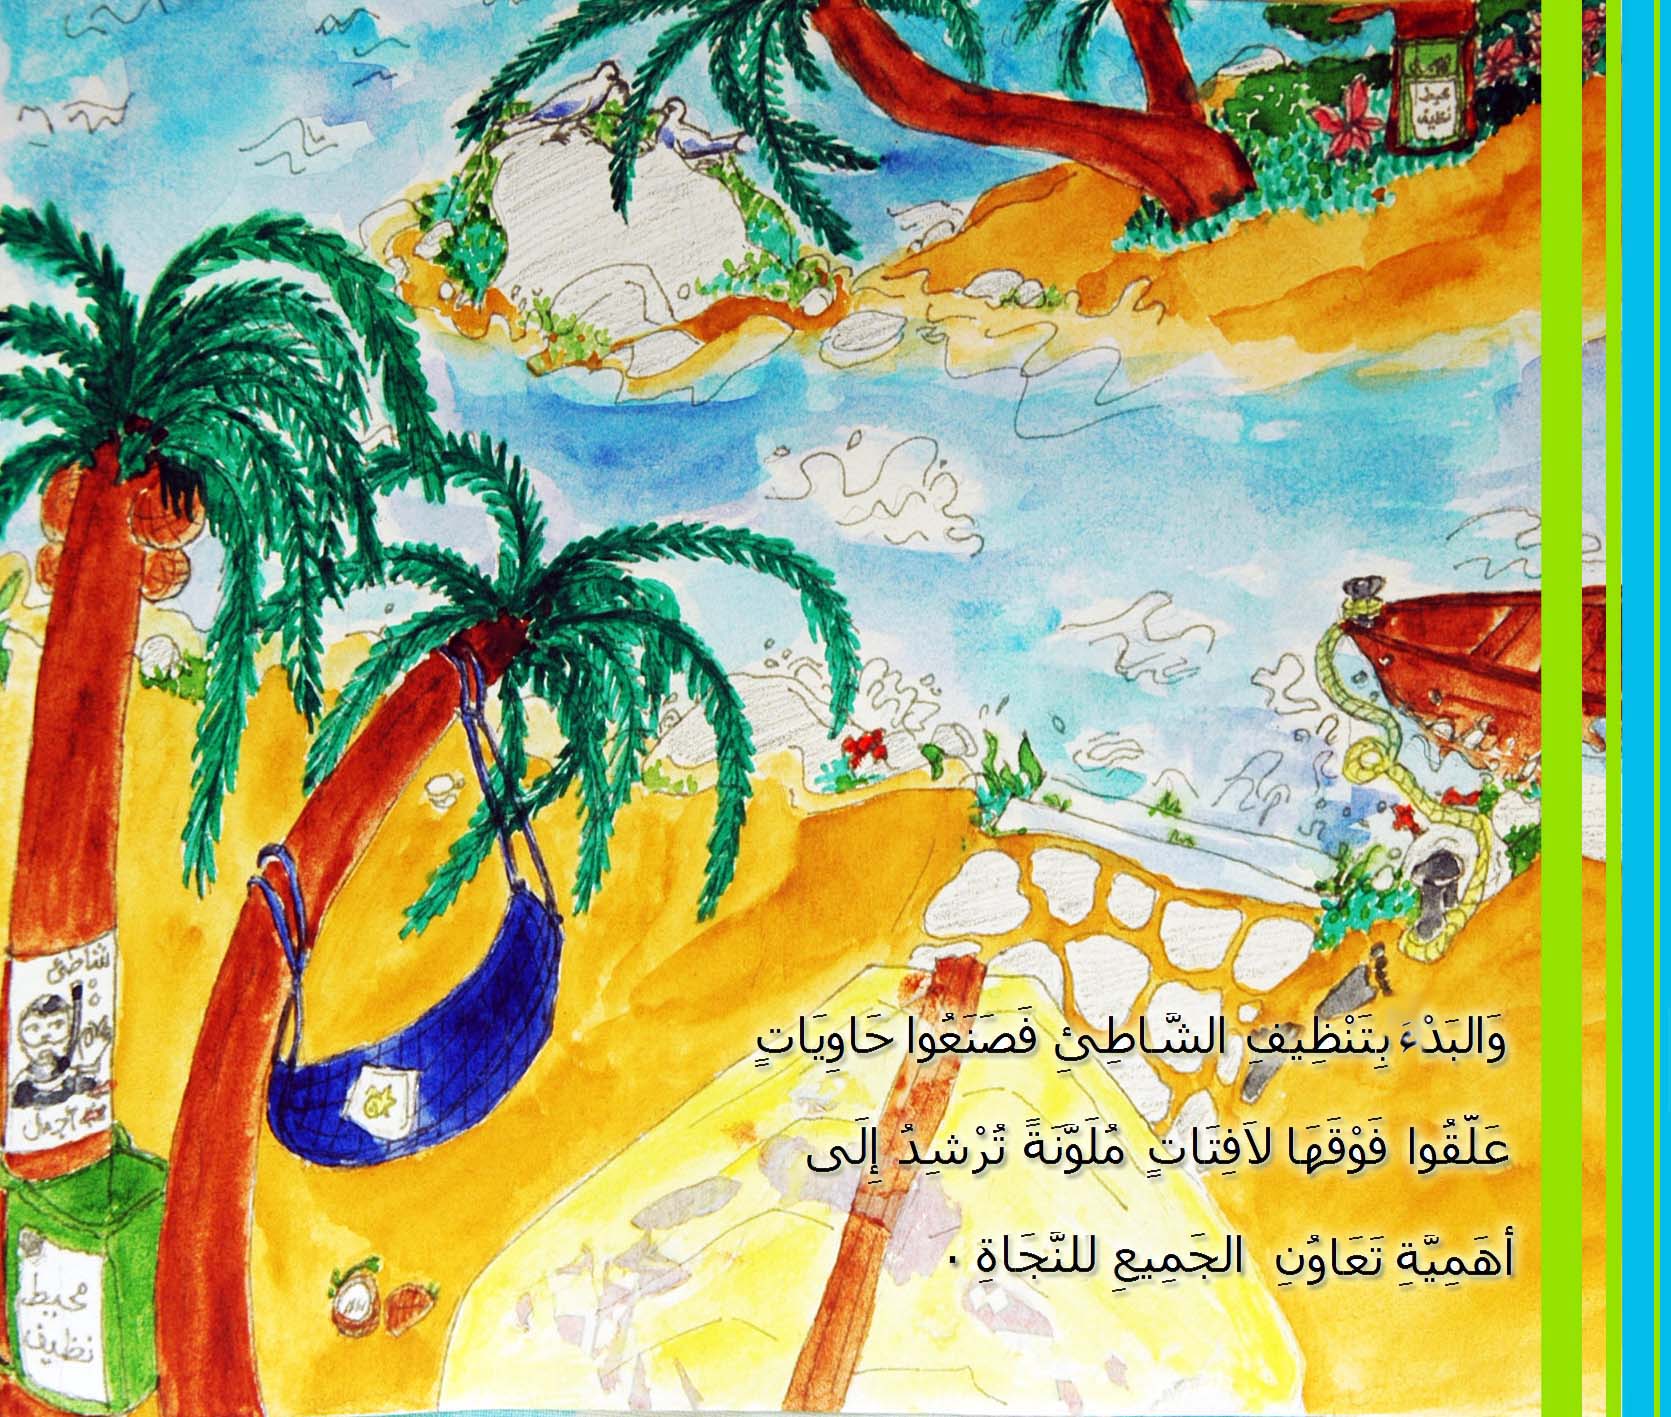 من قصص الأطفال المصورة - حكاية: في أعماق البحار - من المجموعة القصصية: سلسلة زهرة الثالوث - كتابة ورسوم وتصميم: كريمة الغربي - موقع (كيدزوون | Kidzooon)